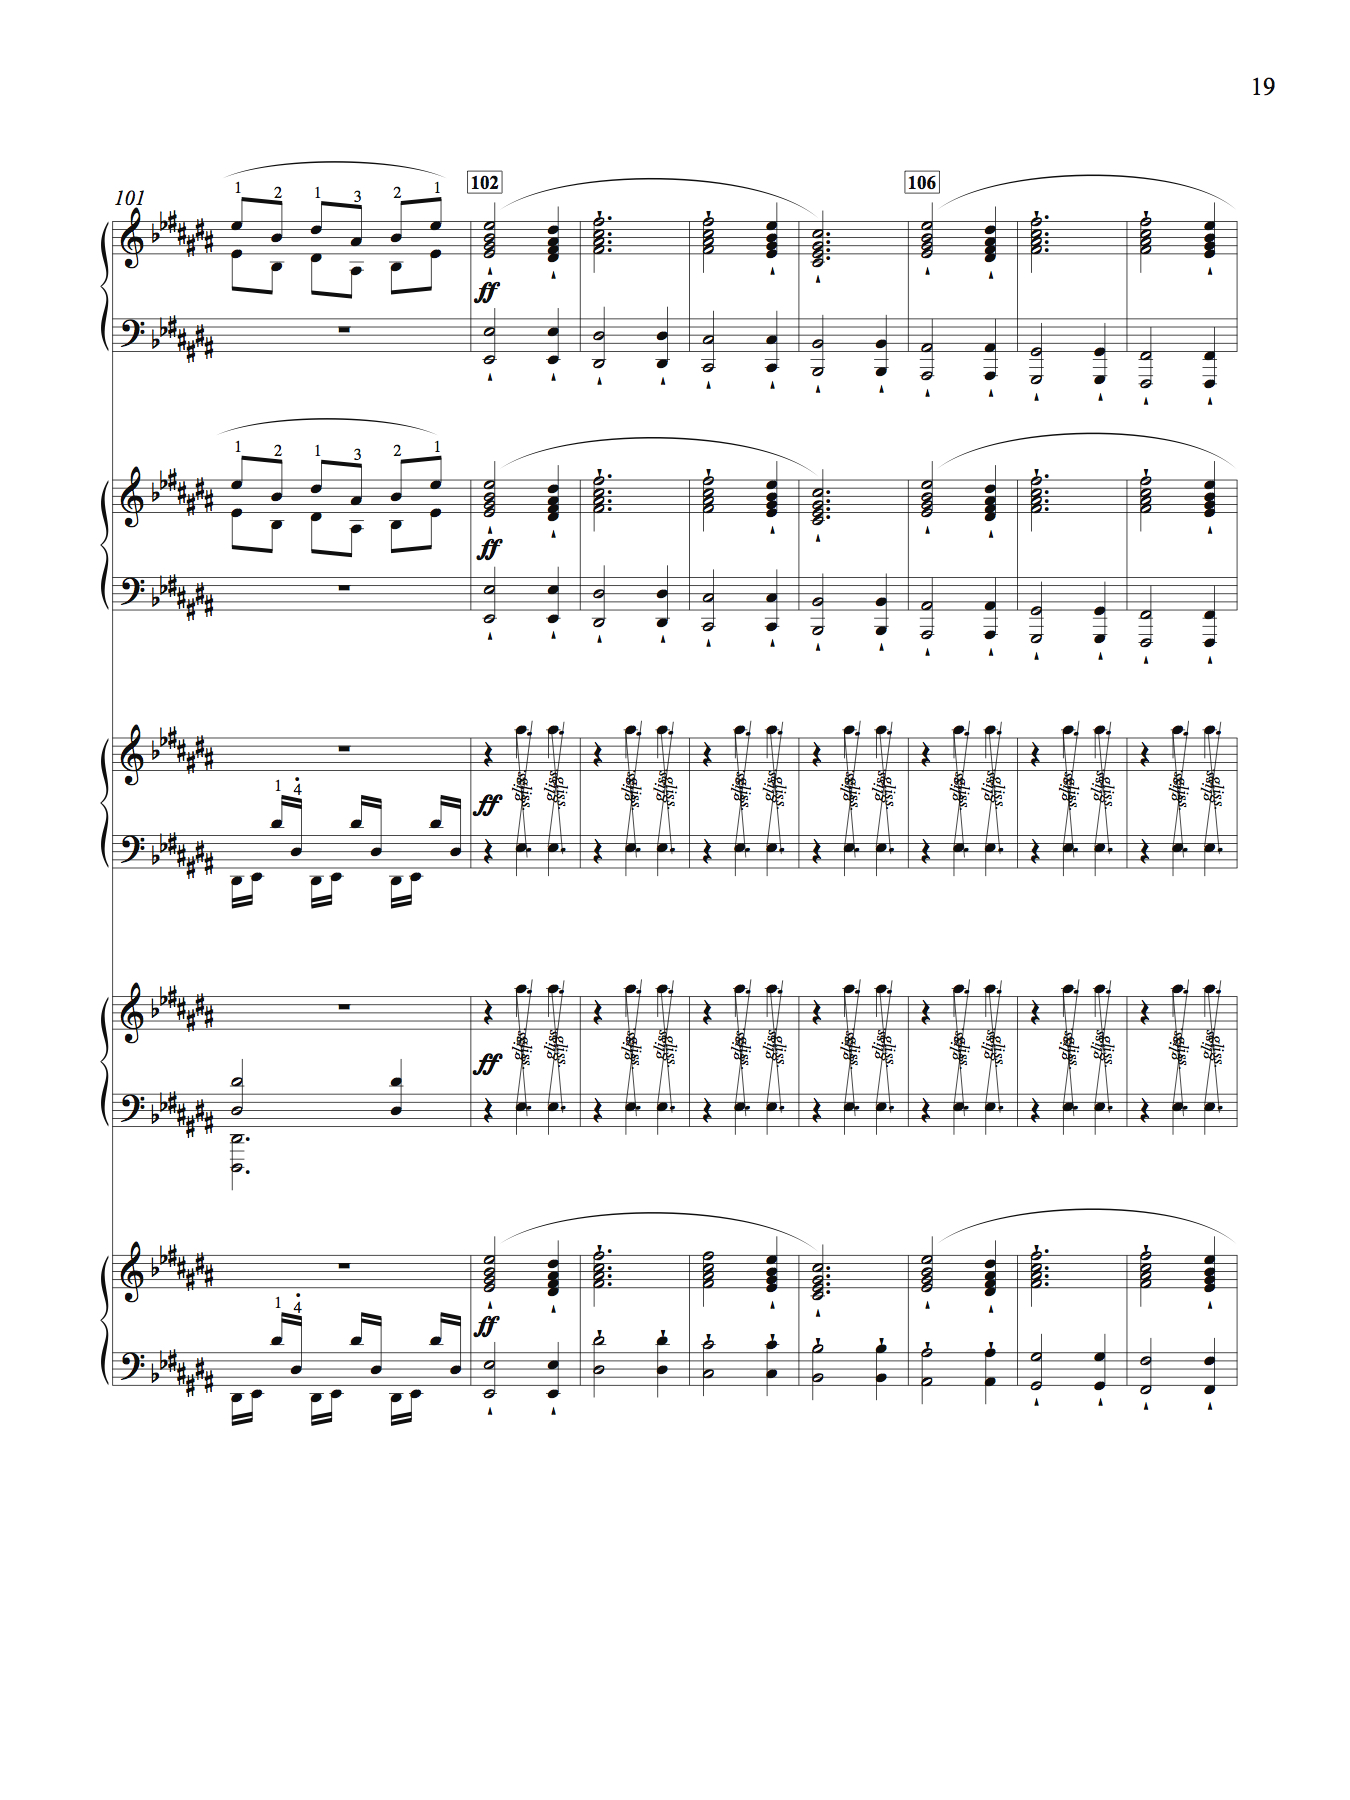 Rhythm song score p4.jpg